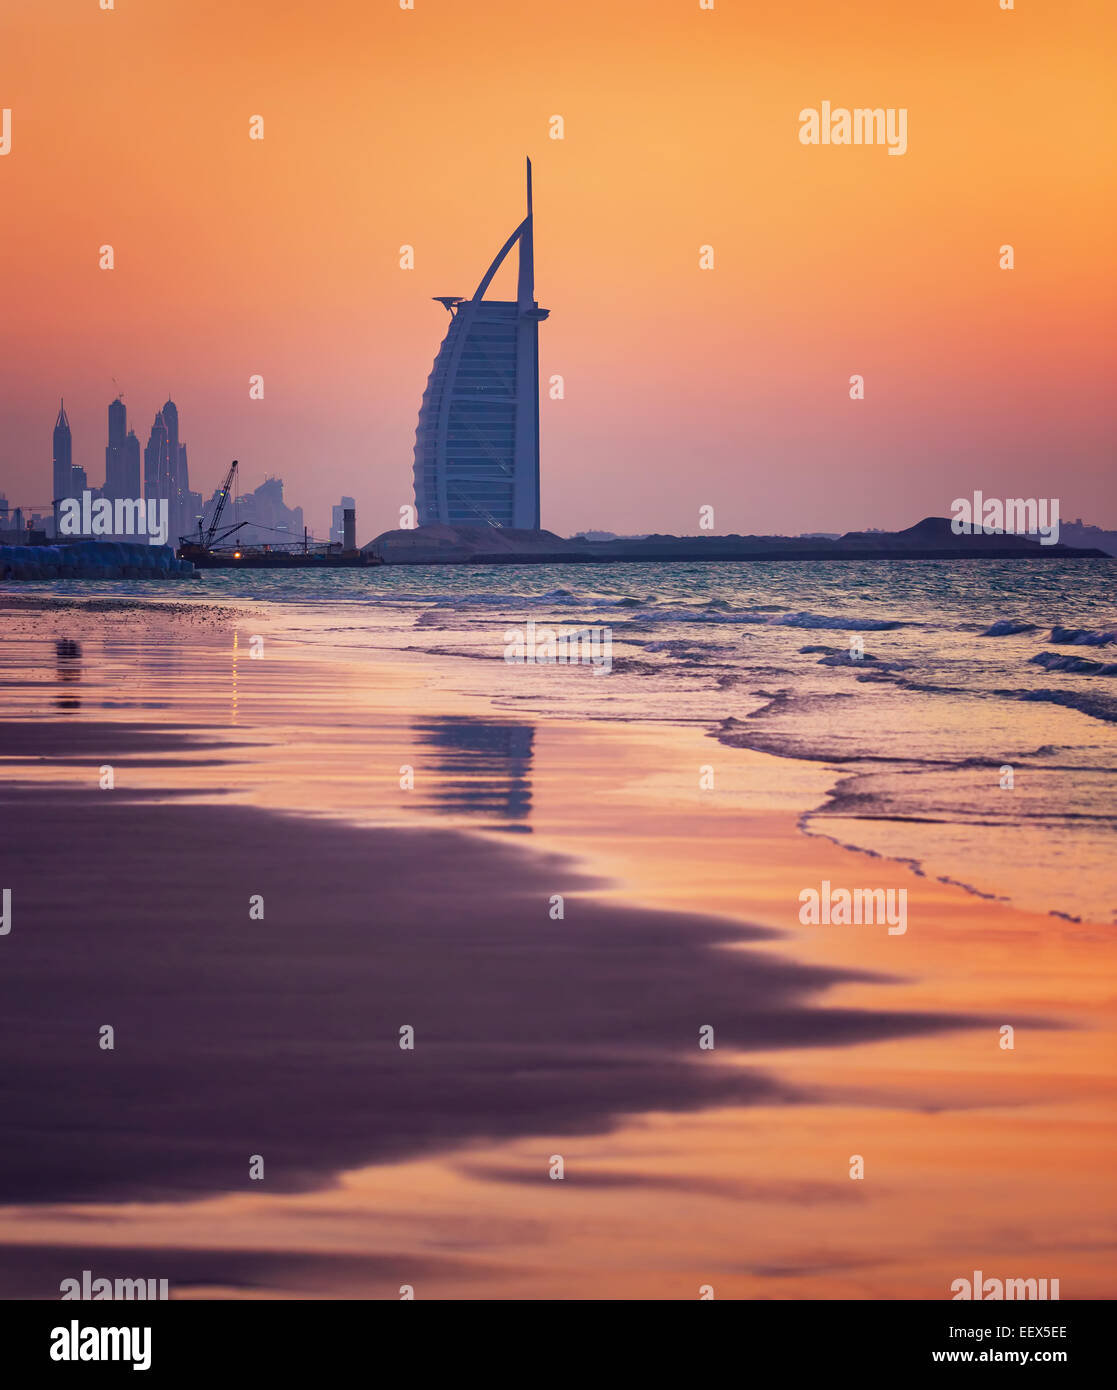 DUBAI, Vereinigte Arabische Emirate - 24 NOV: Burj Al Arab ist 321m höchste Hotel der Welt, Luxus-Hotel steht auf einer künstlichen Insel Stockfoto